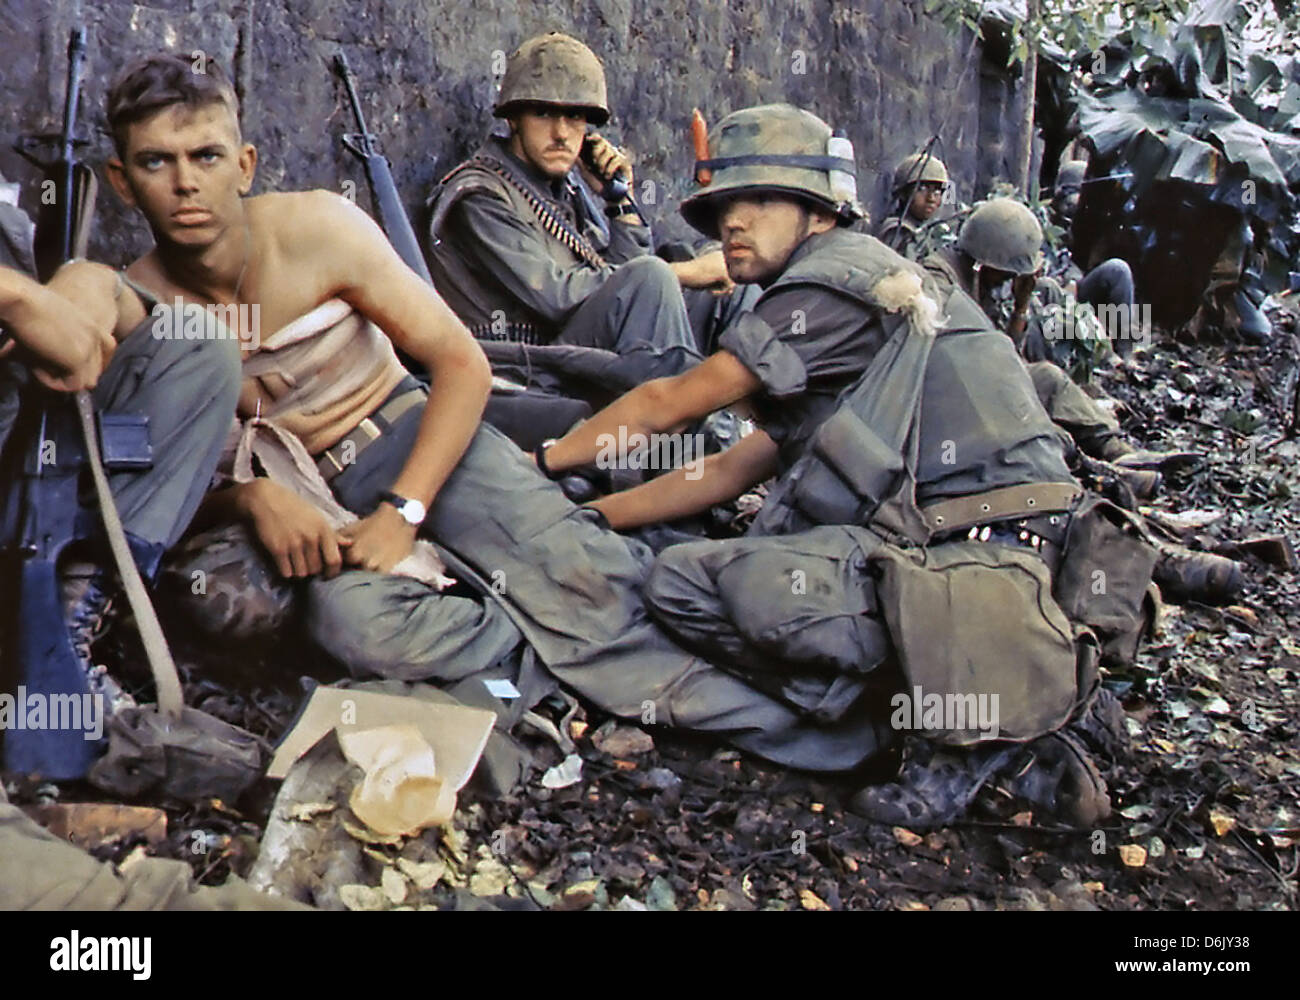 Marina de los EE.UU. R. D. Howe trata las heridas del soldado de primera clase D. A. Crum durante la ofensiva del Tet el 2 de junio de 1968 en la ciudad Hue, Vietnam. Foto de stock